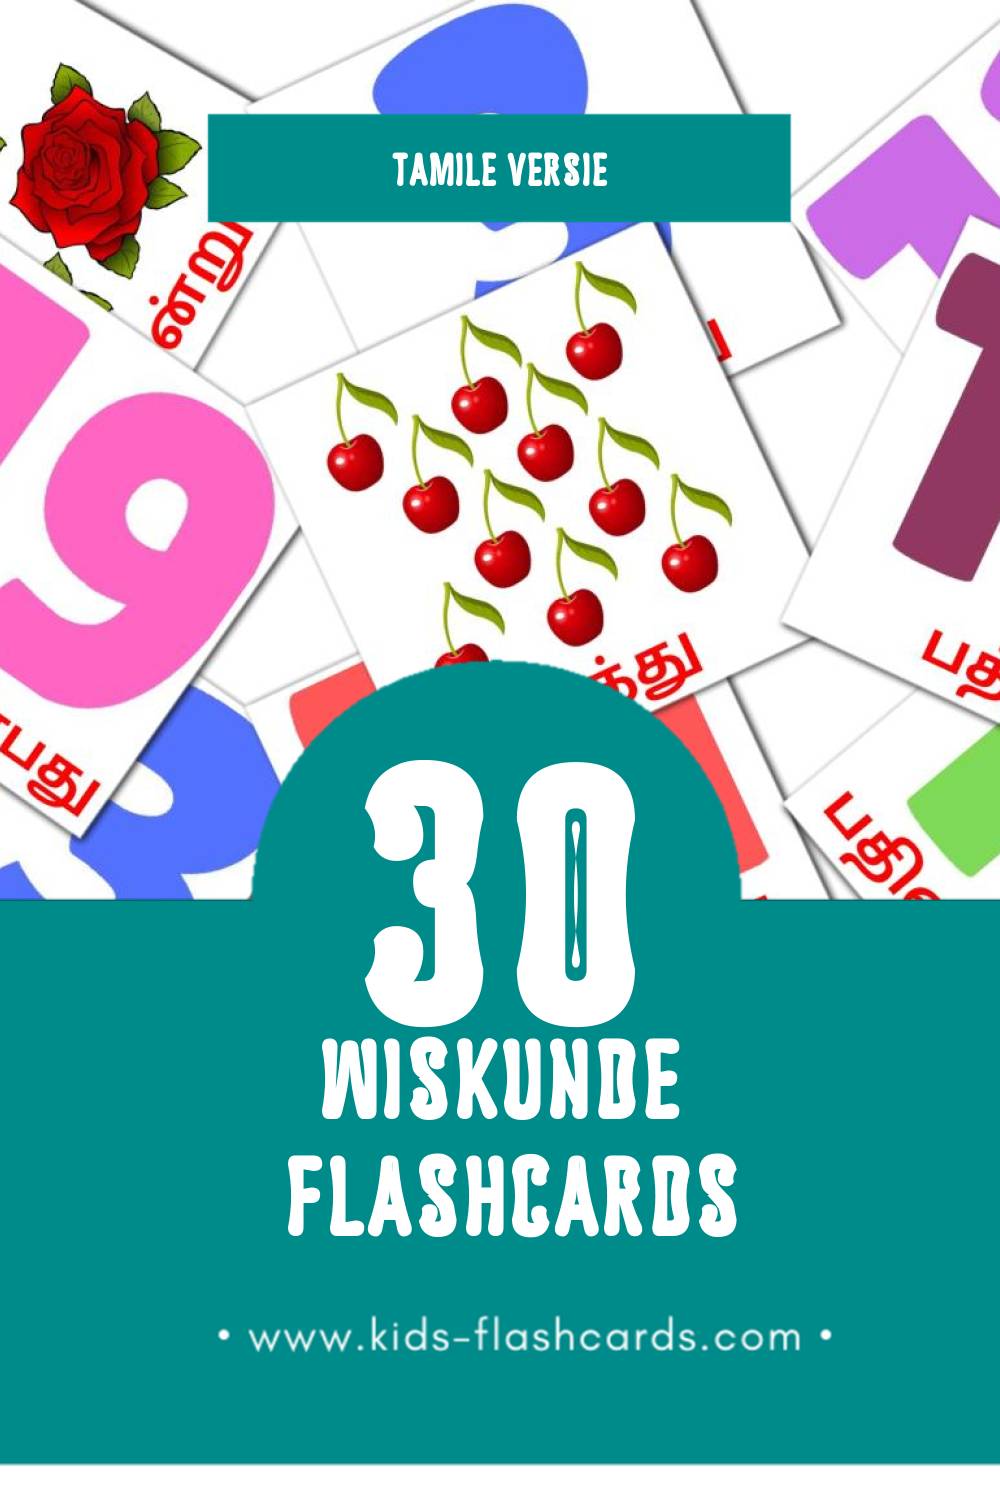 Visuele கணிதம் Flashcards voor Kleuters (30 kaarten in het Tamil)